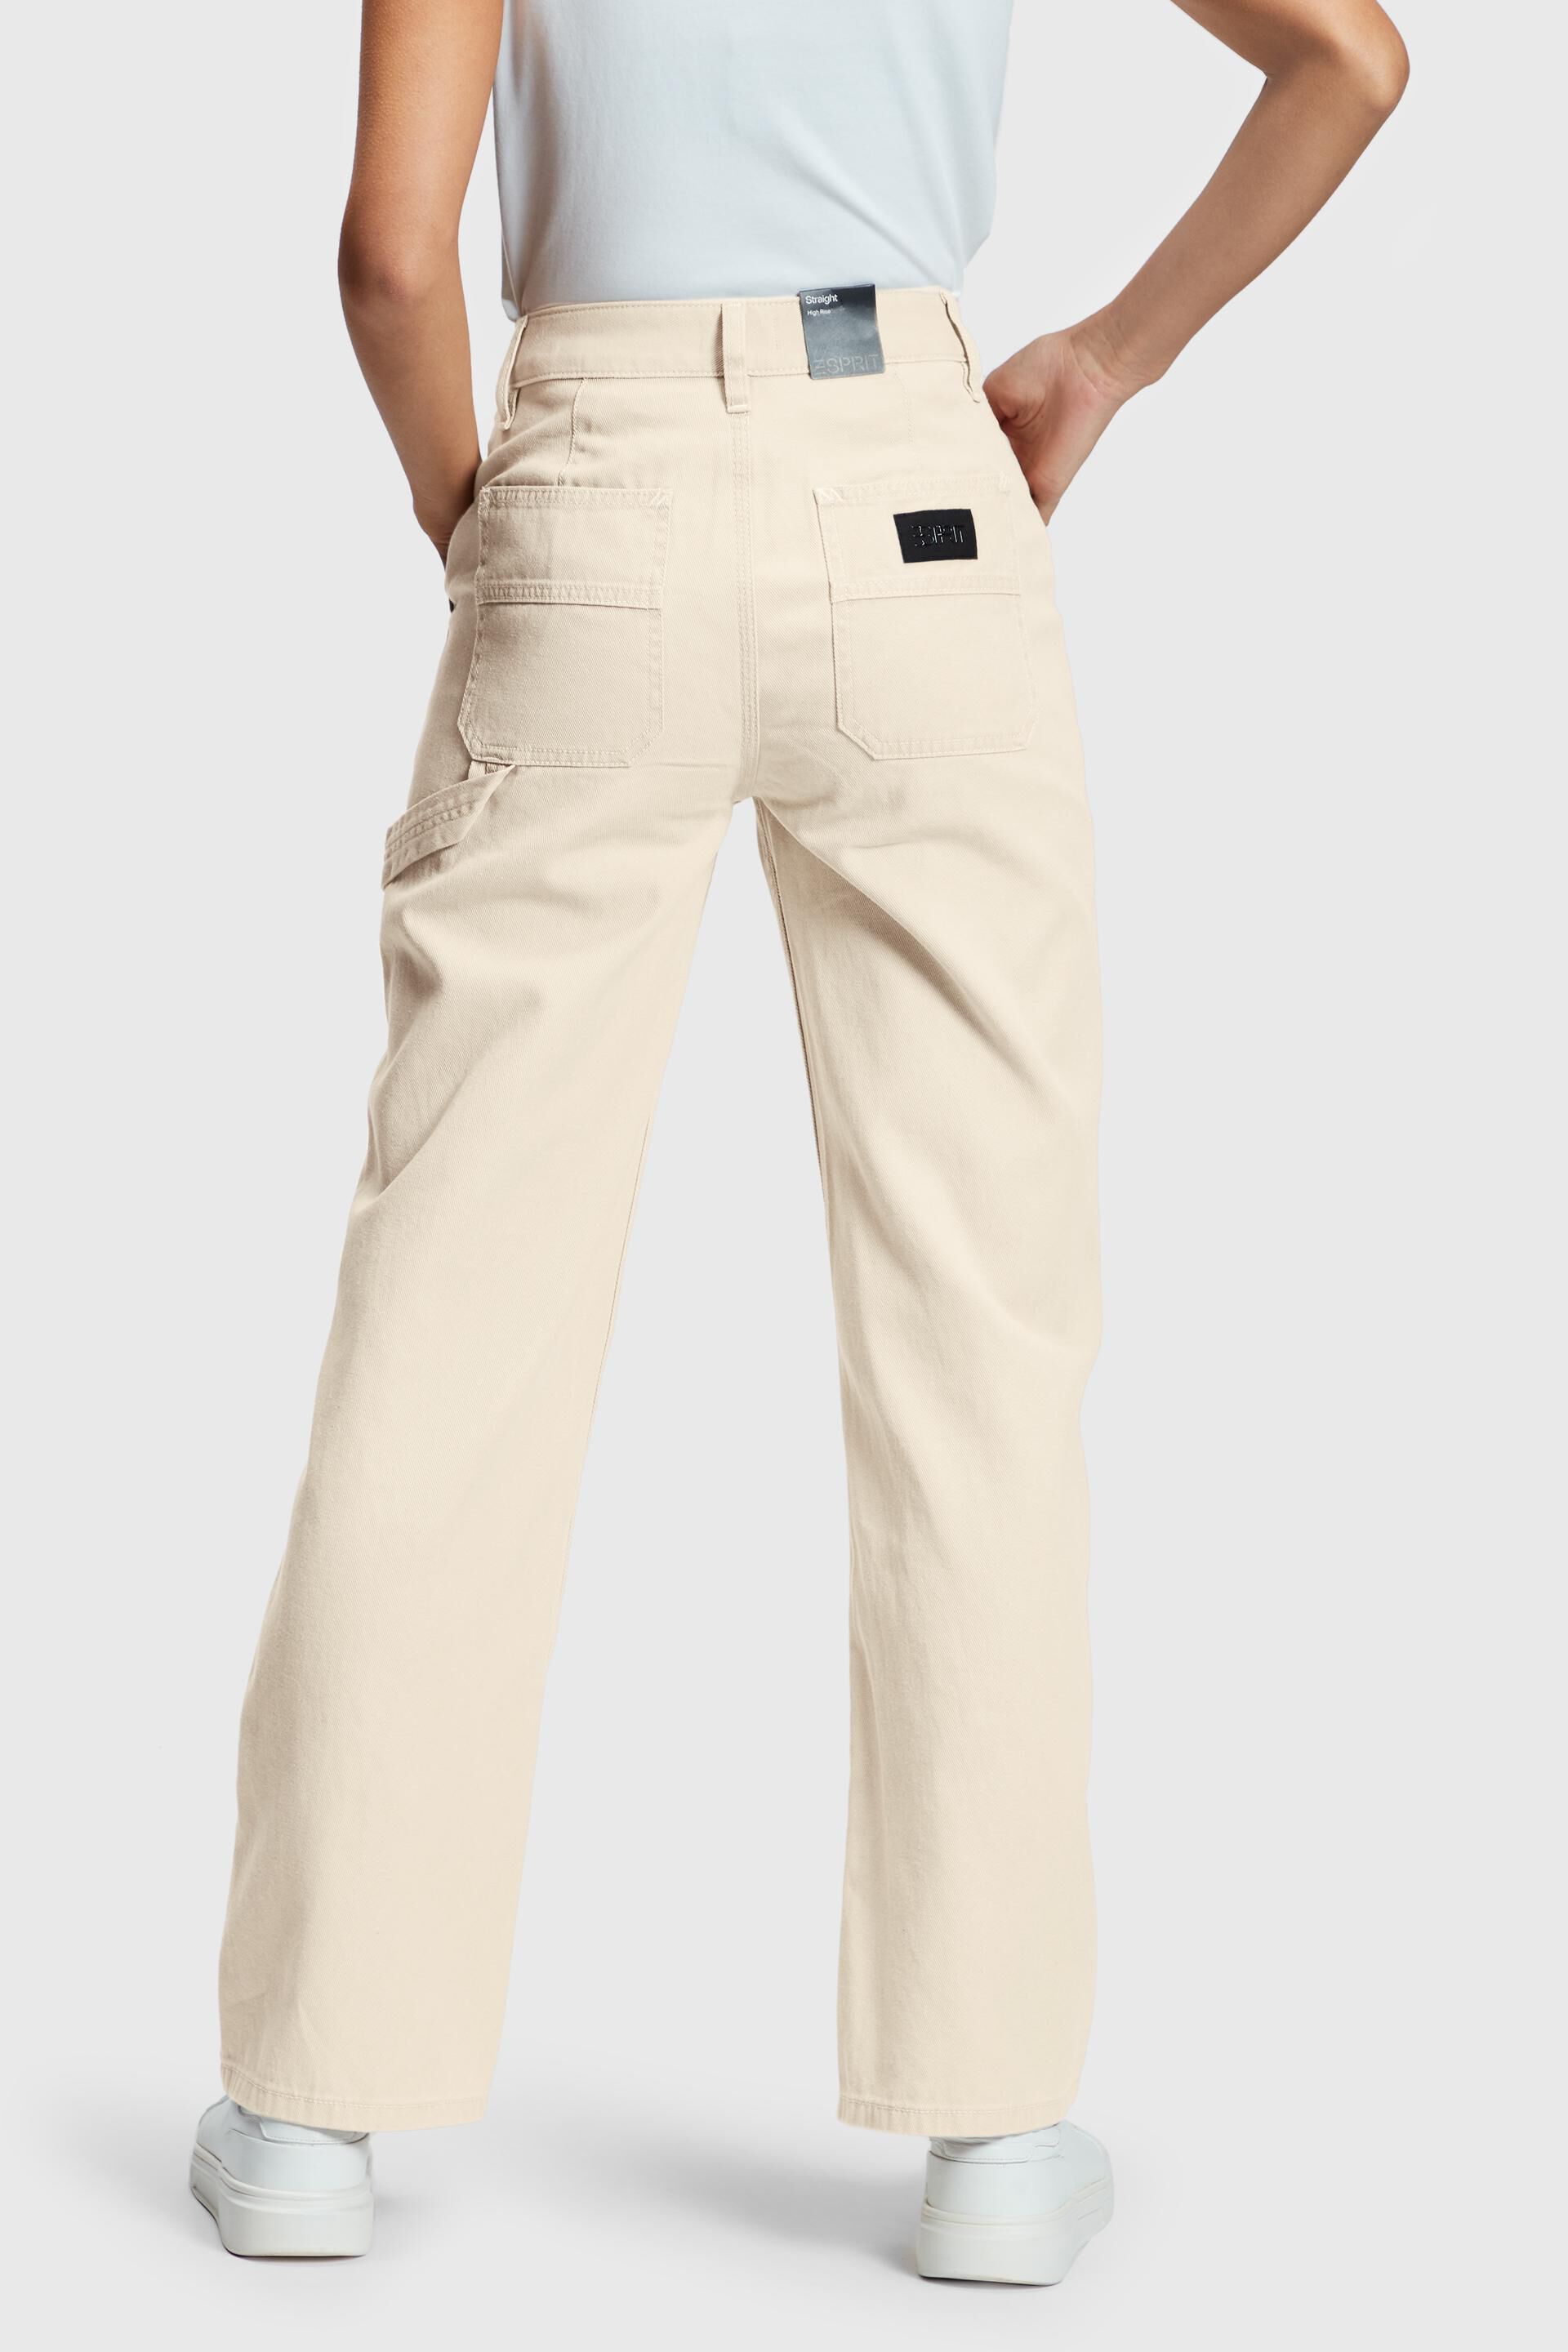 Esprit Damen Workwear-Jeans mit hohem 90er-Jahre-Stil Bund Bein im und geradem